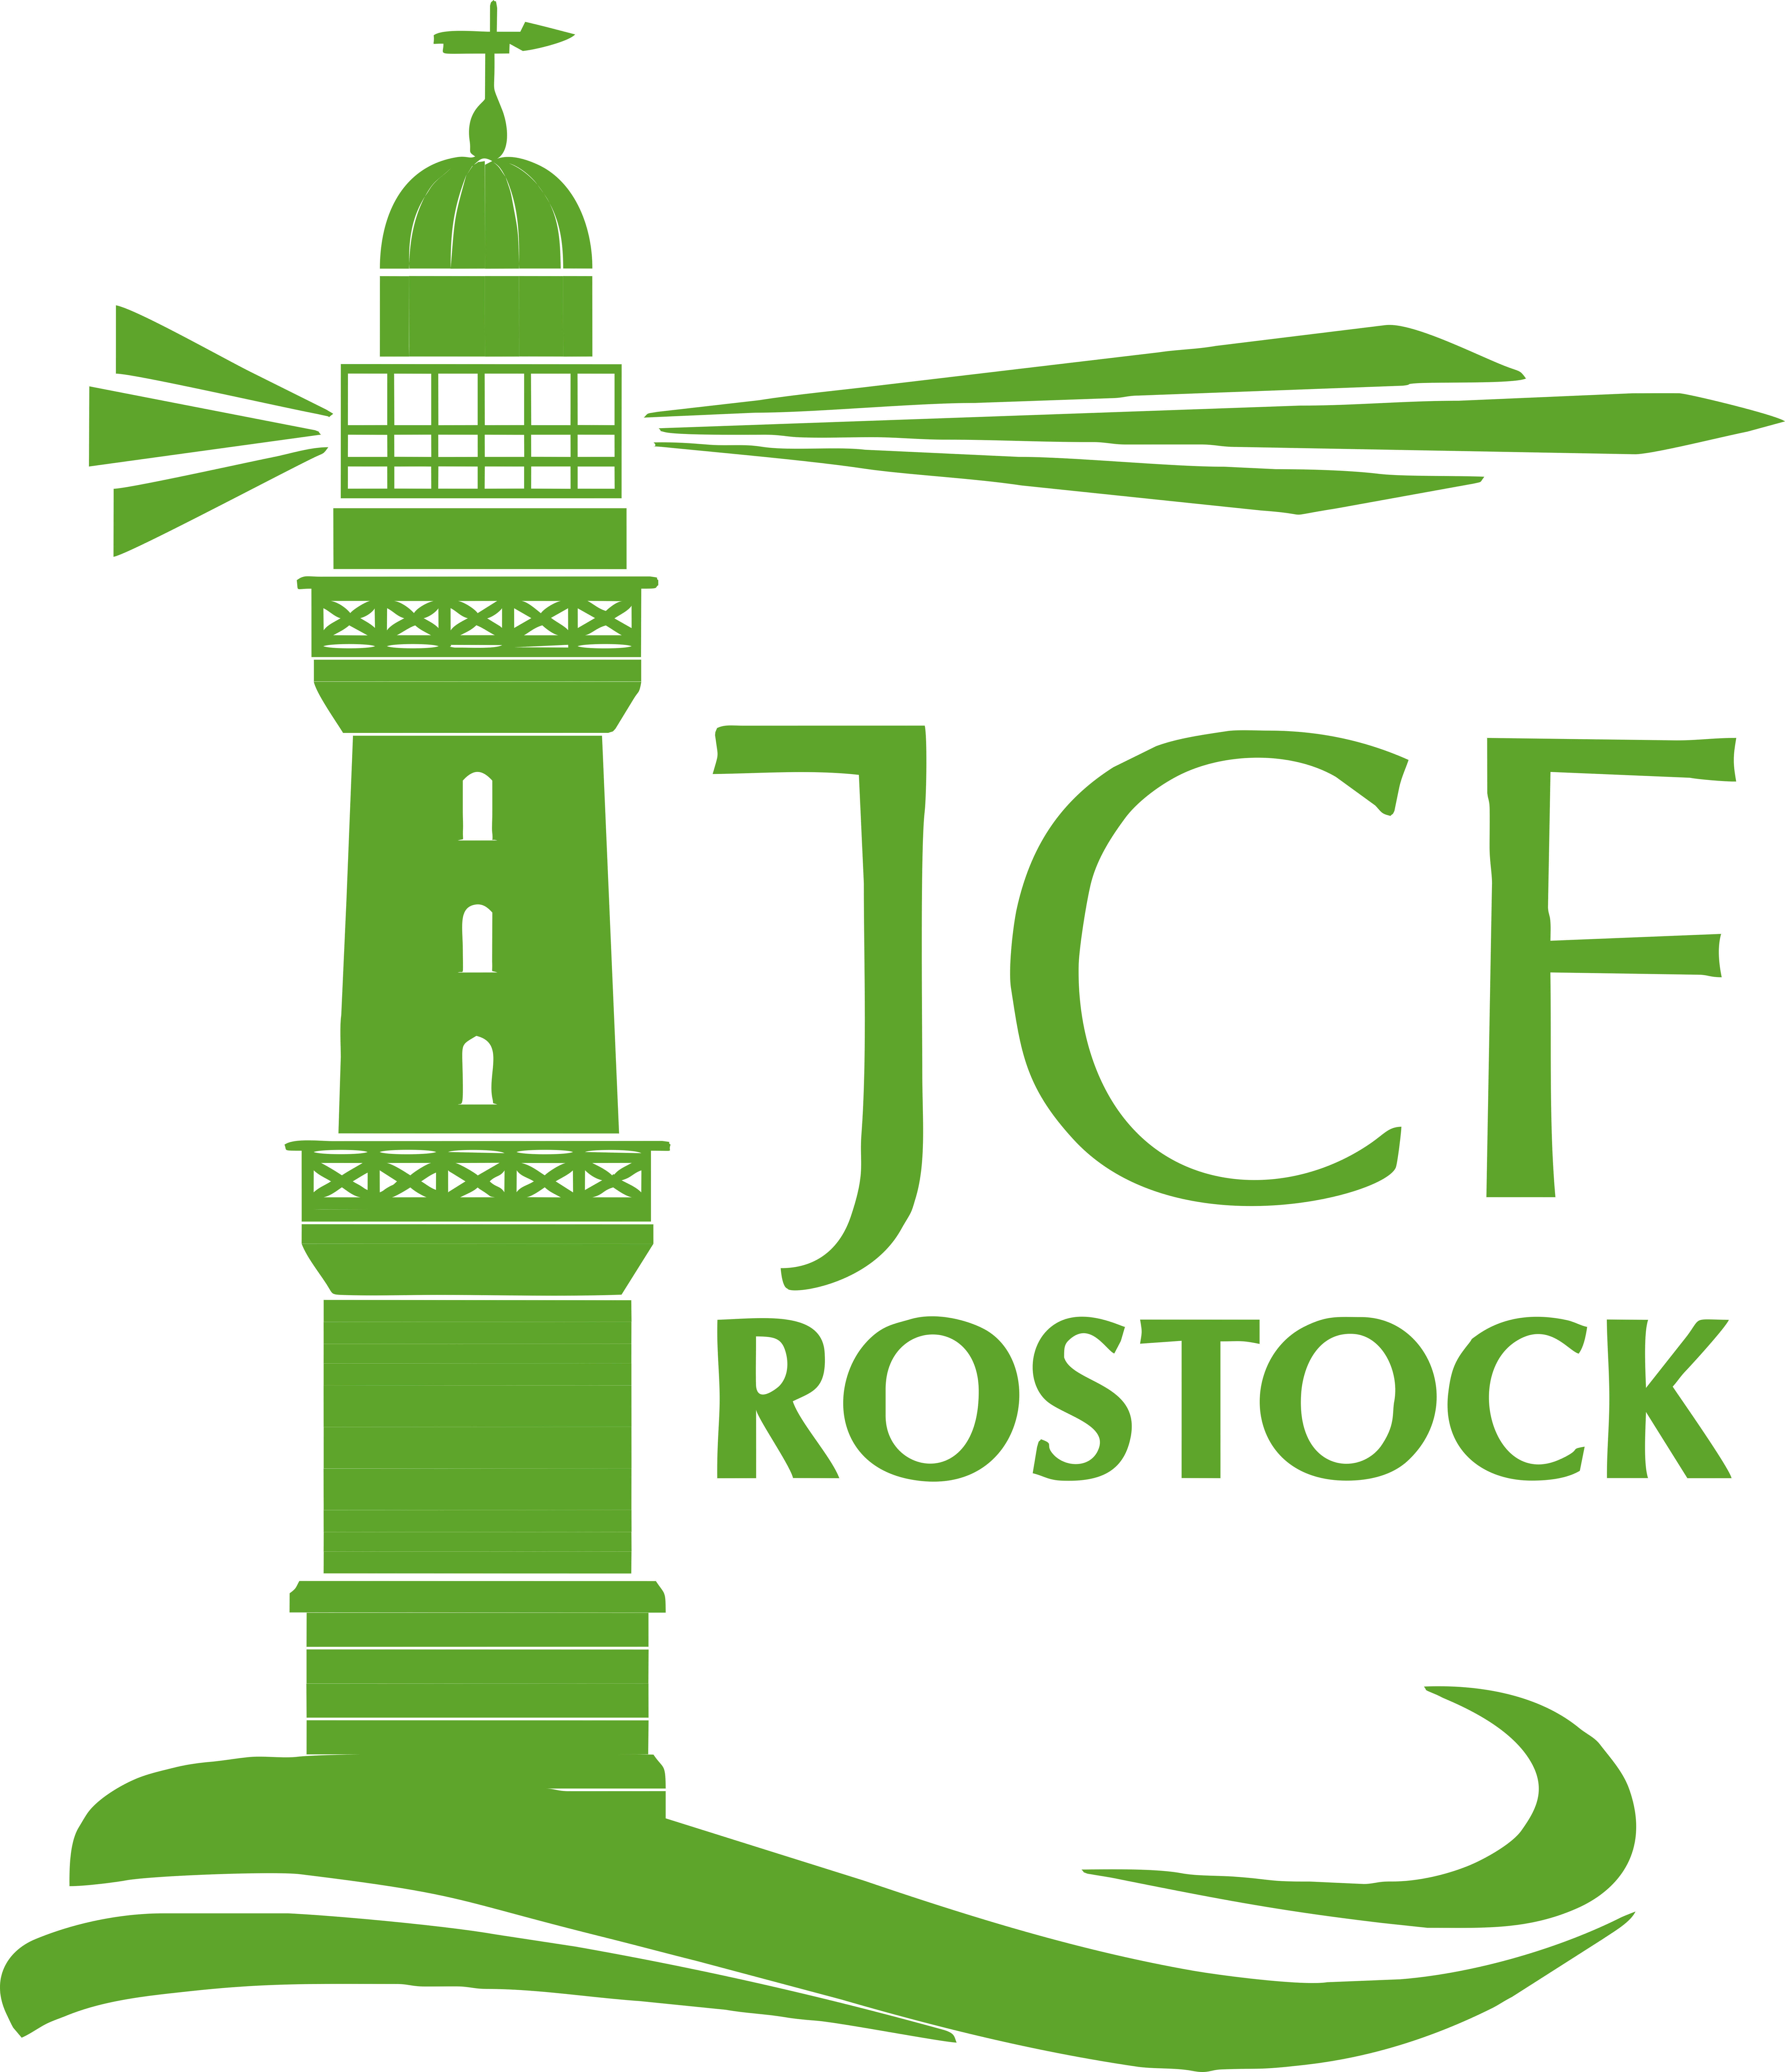 JCF_Rostock_Vektor